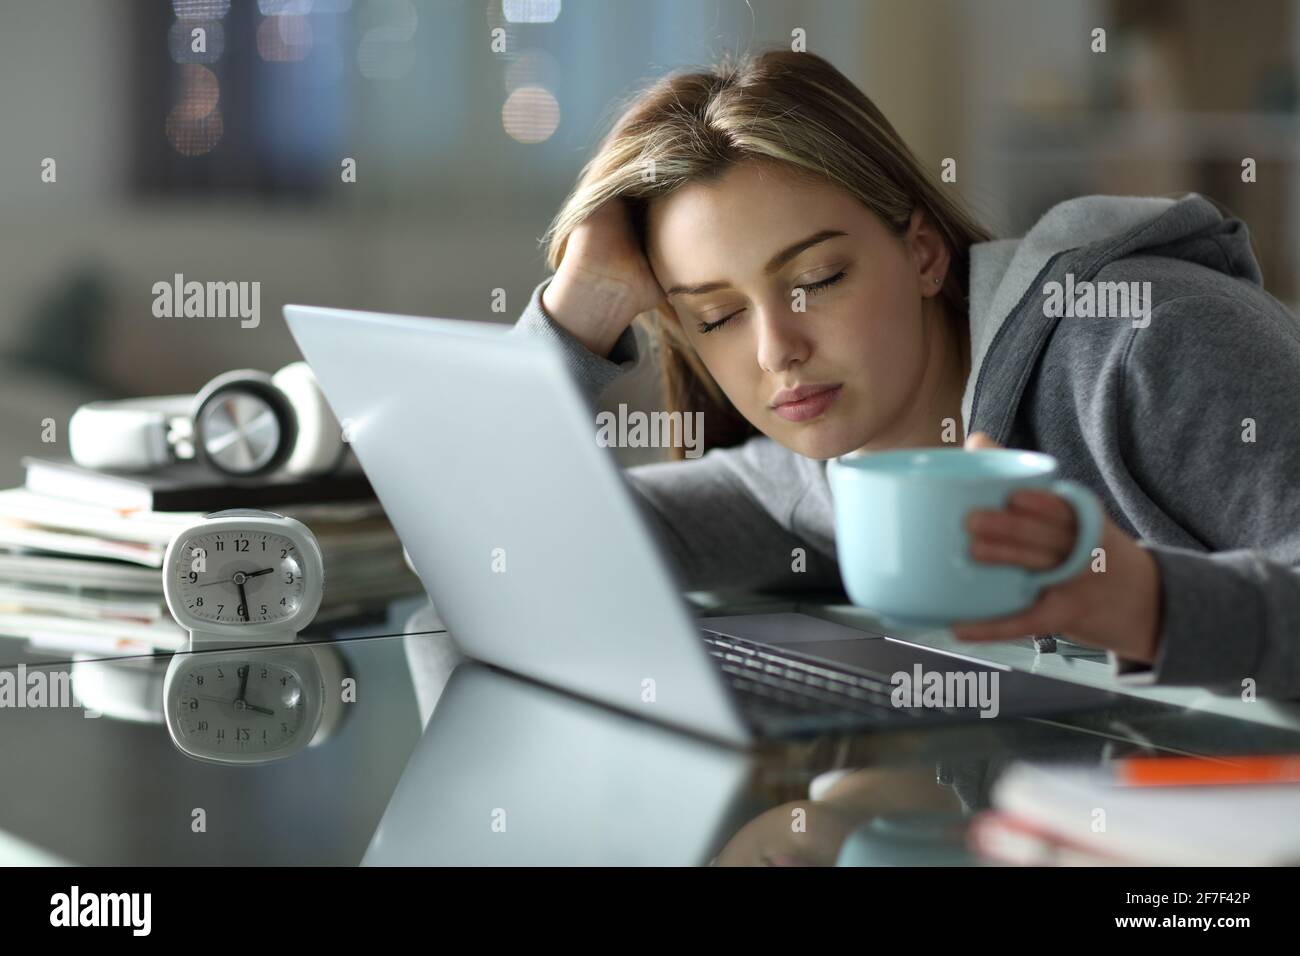 Un étudiant endormi et fatigué travaillant avec un ordinateur portable la nuit à la maison Banque D'Images